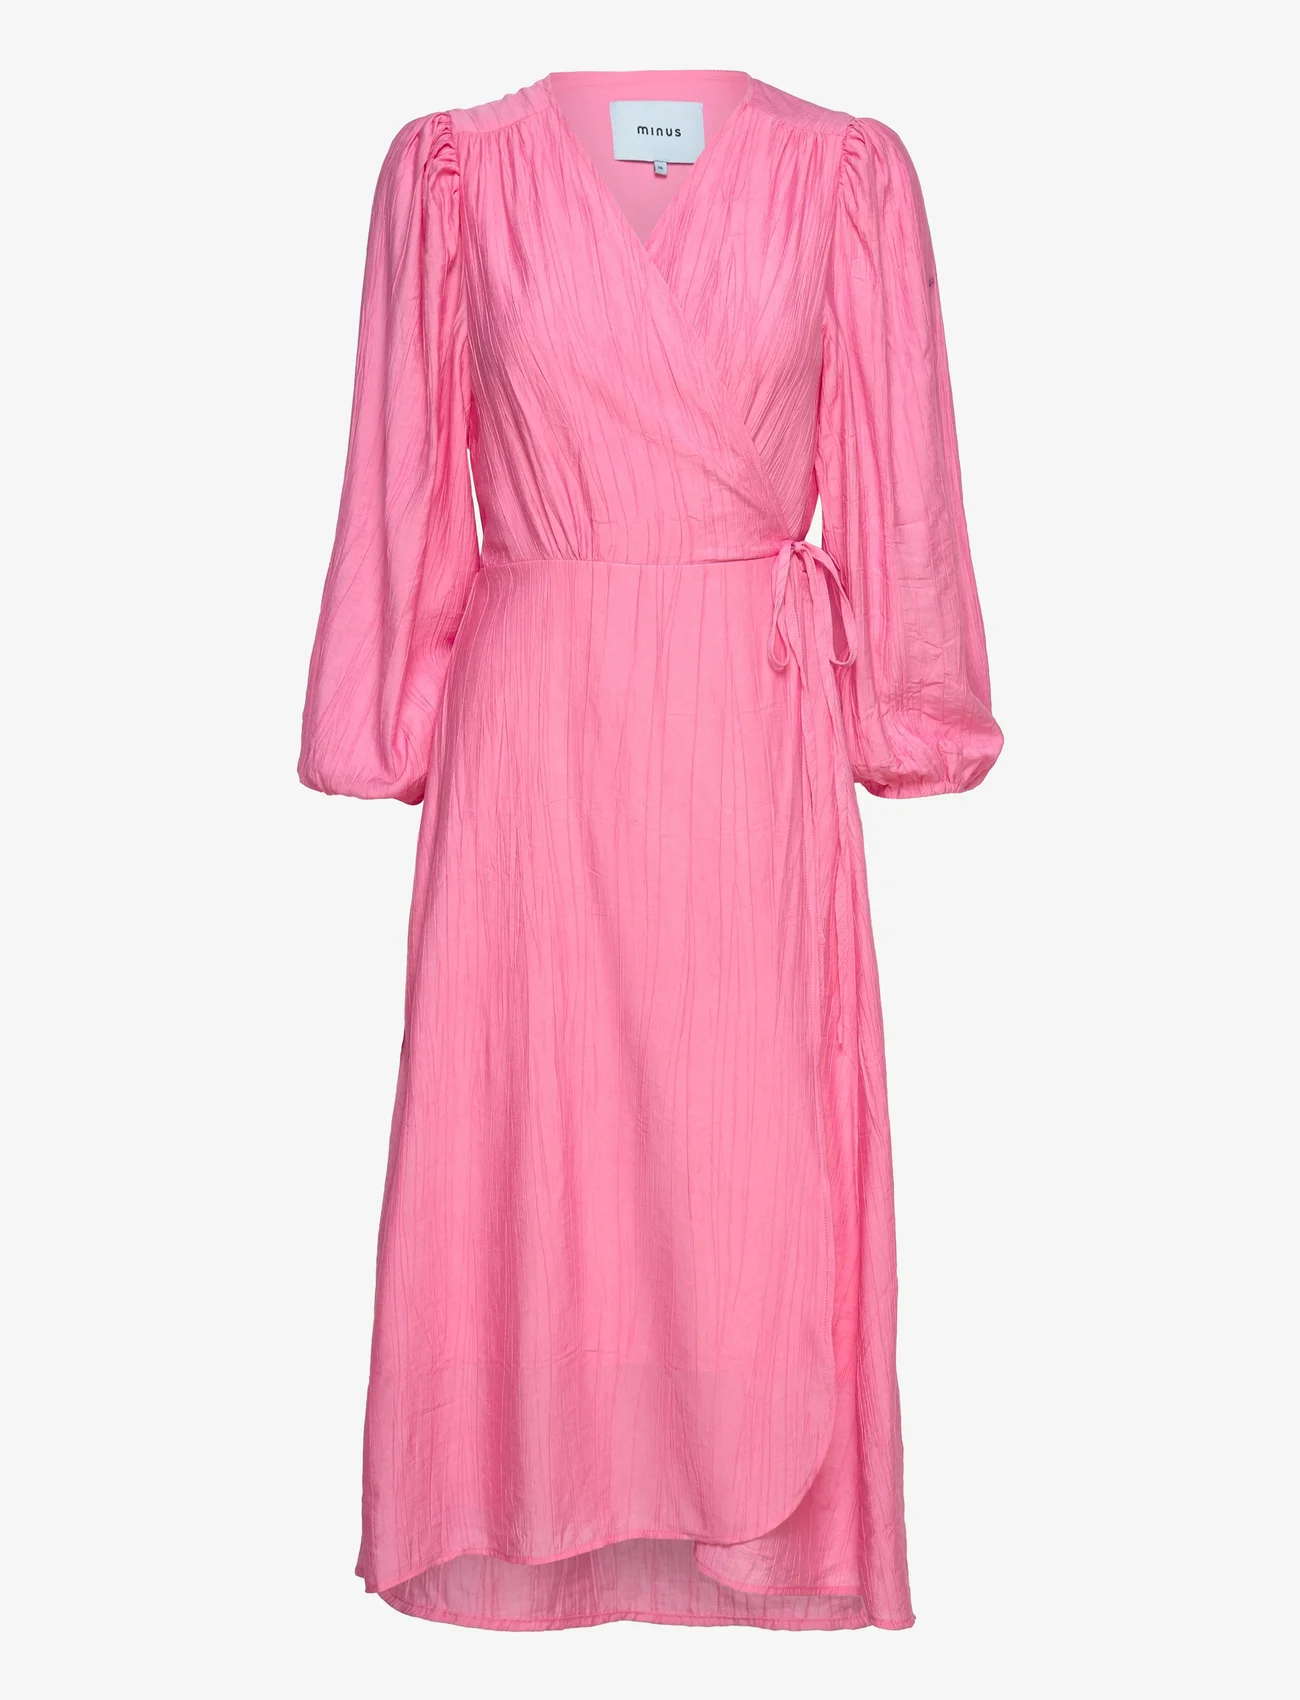 Minus - Josia Wrap Dress - wrap dresses - orchid pink - 0